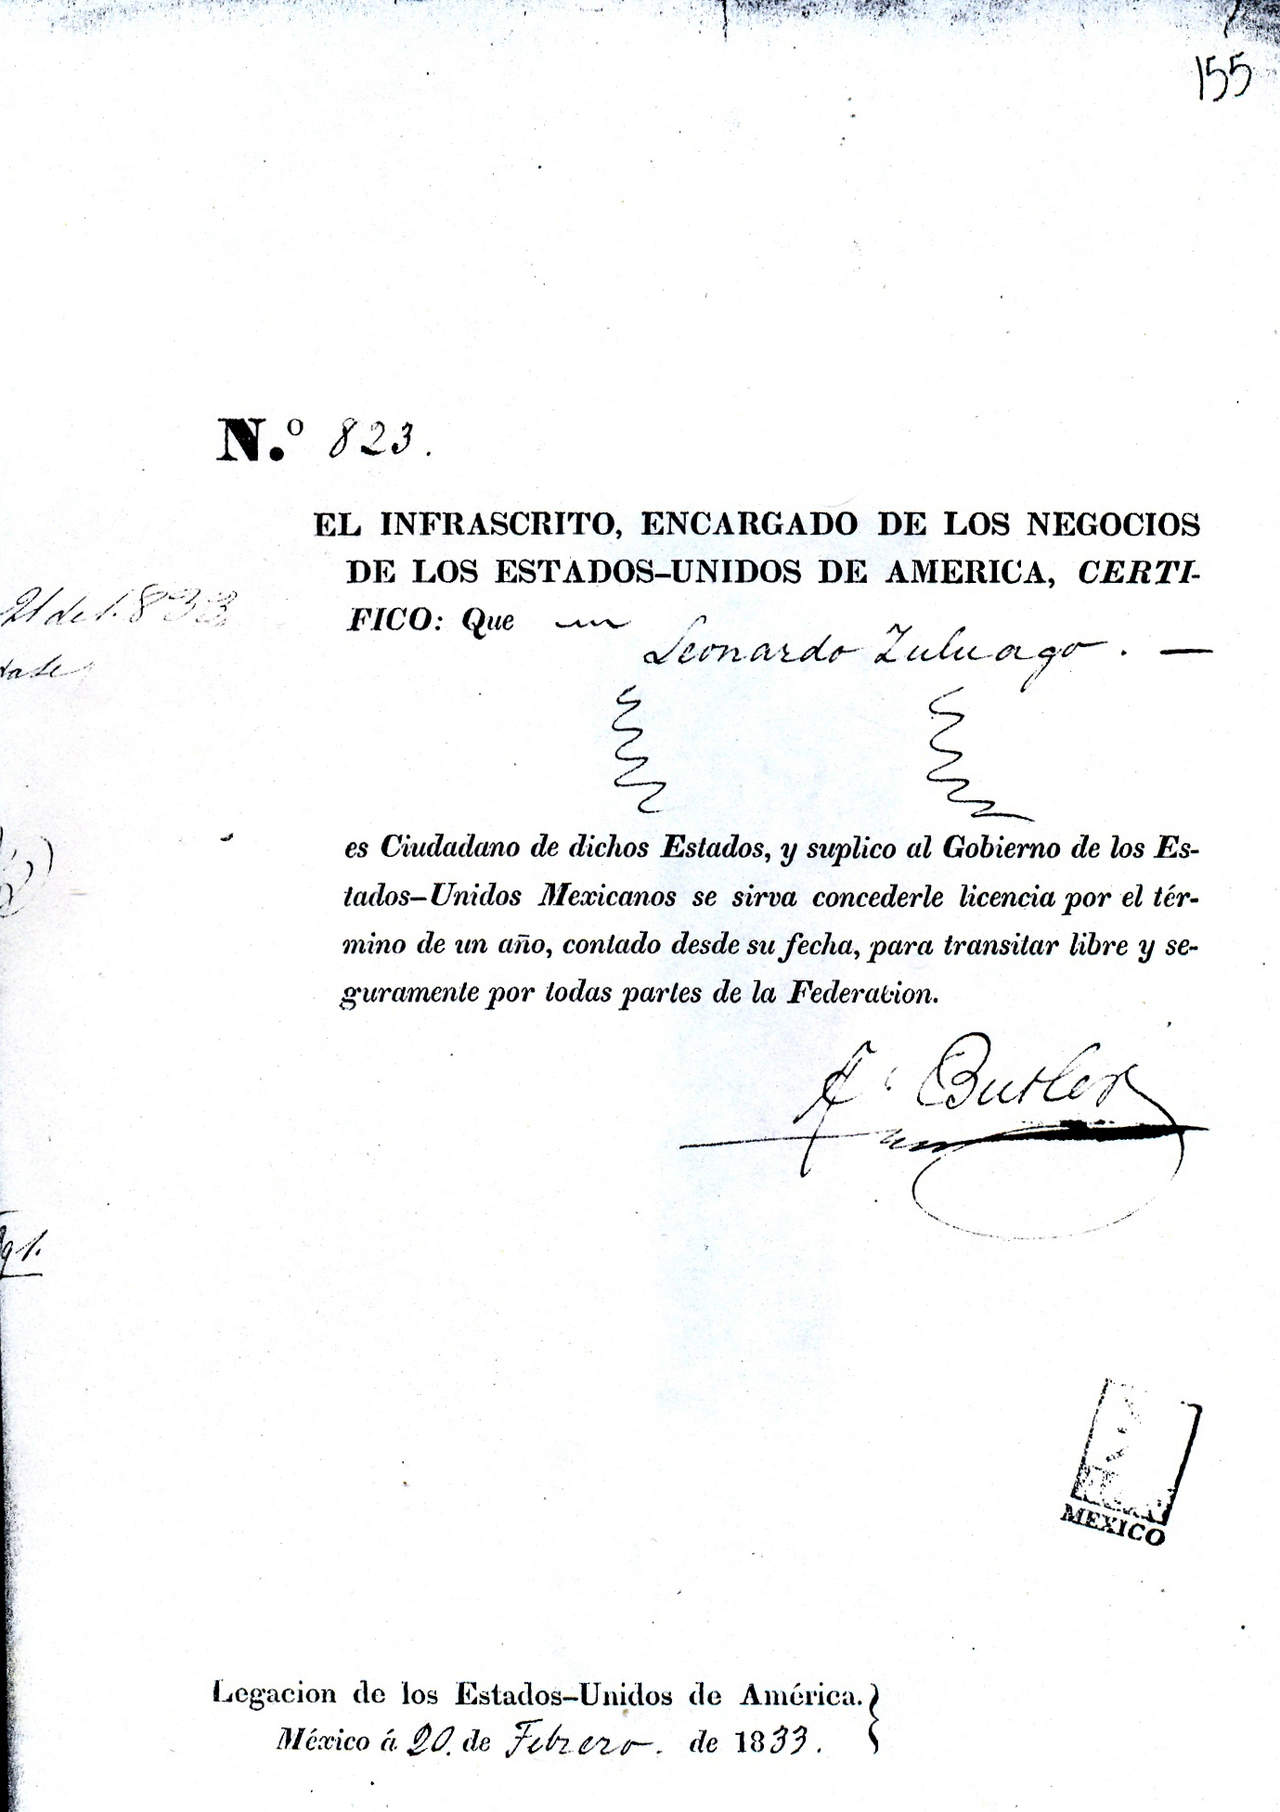 Documento donde la Legación de los Estados Unidos de América abogan ante el gobierno mexicano por el señor Zuloaga.